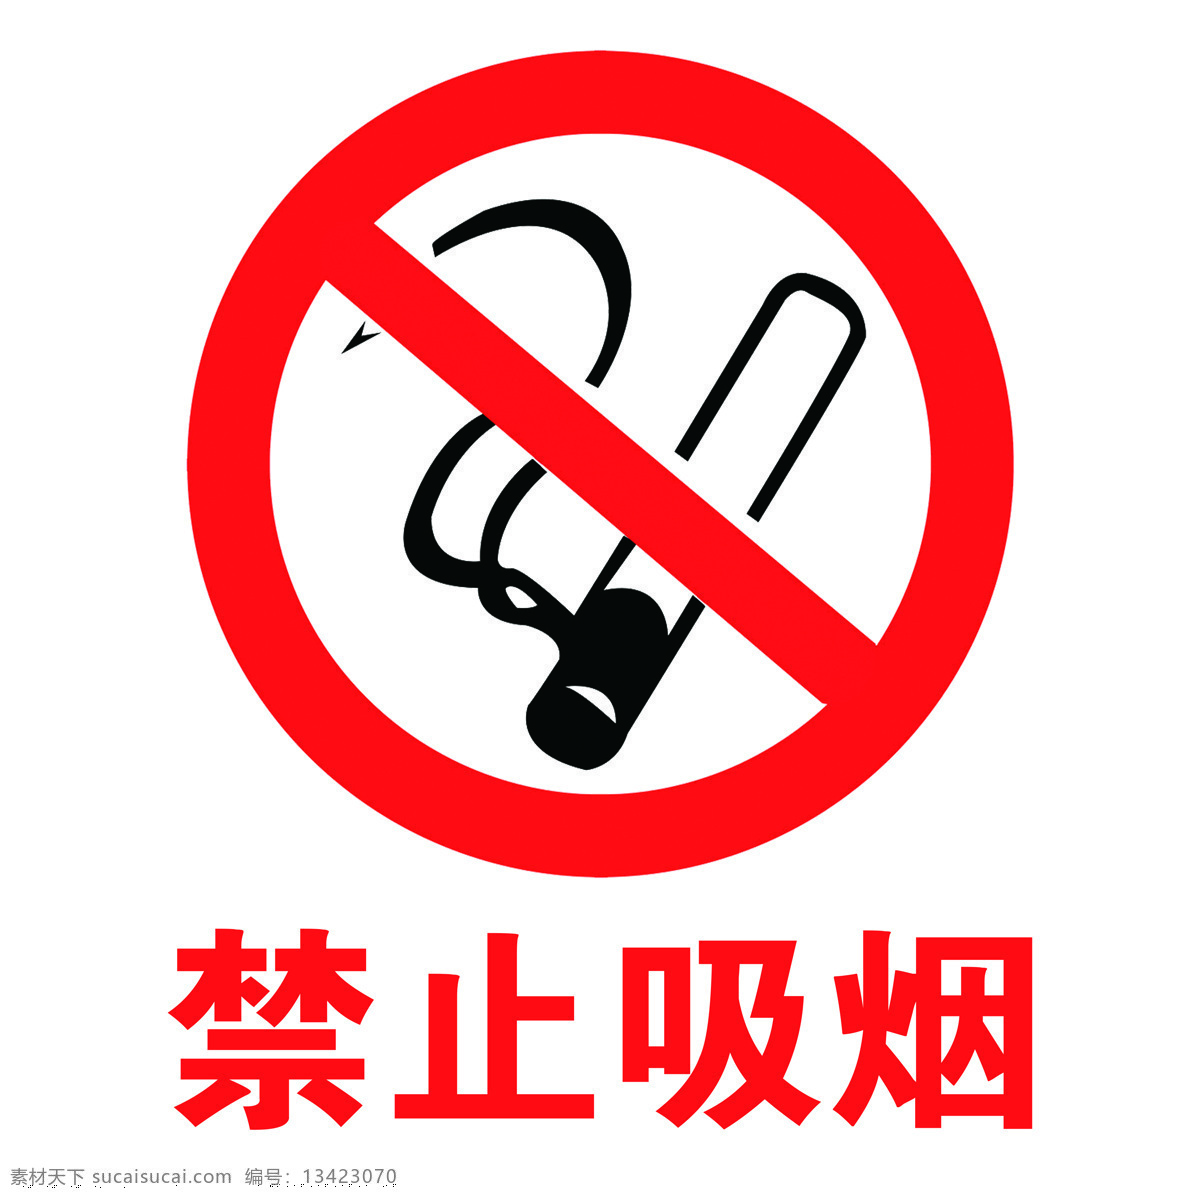 禁止吸烟 标志 红色 吸烟 禁止 黑色 标志图标 公共标识标志